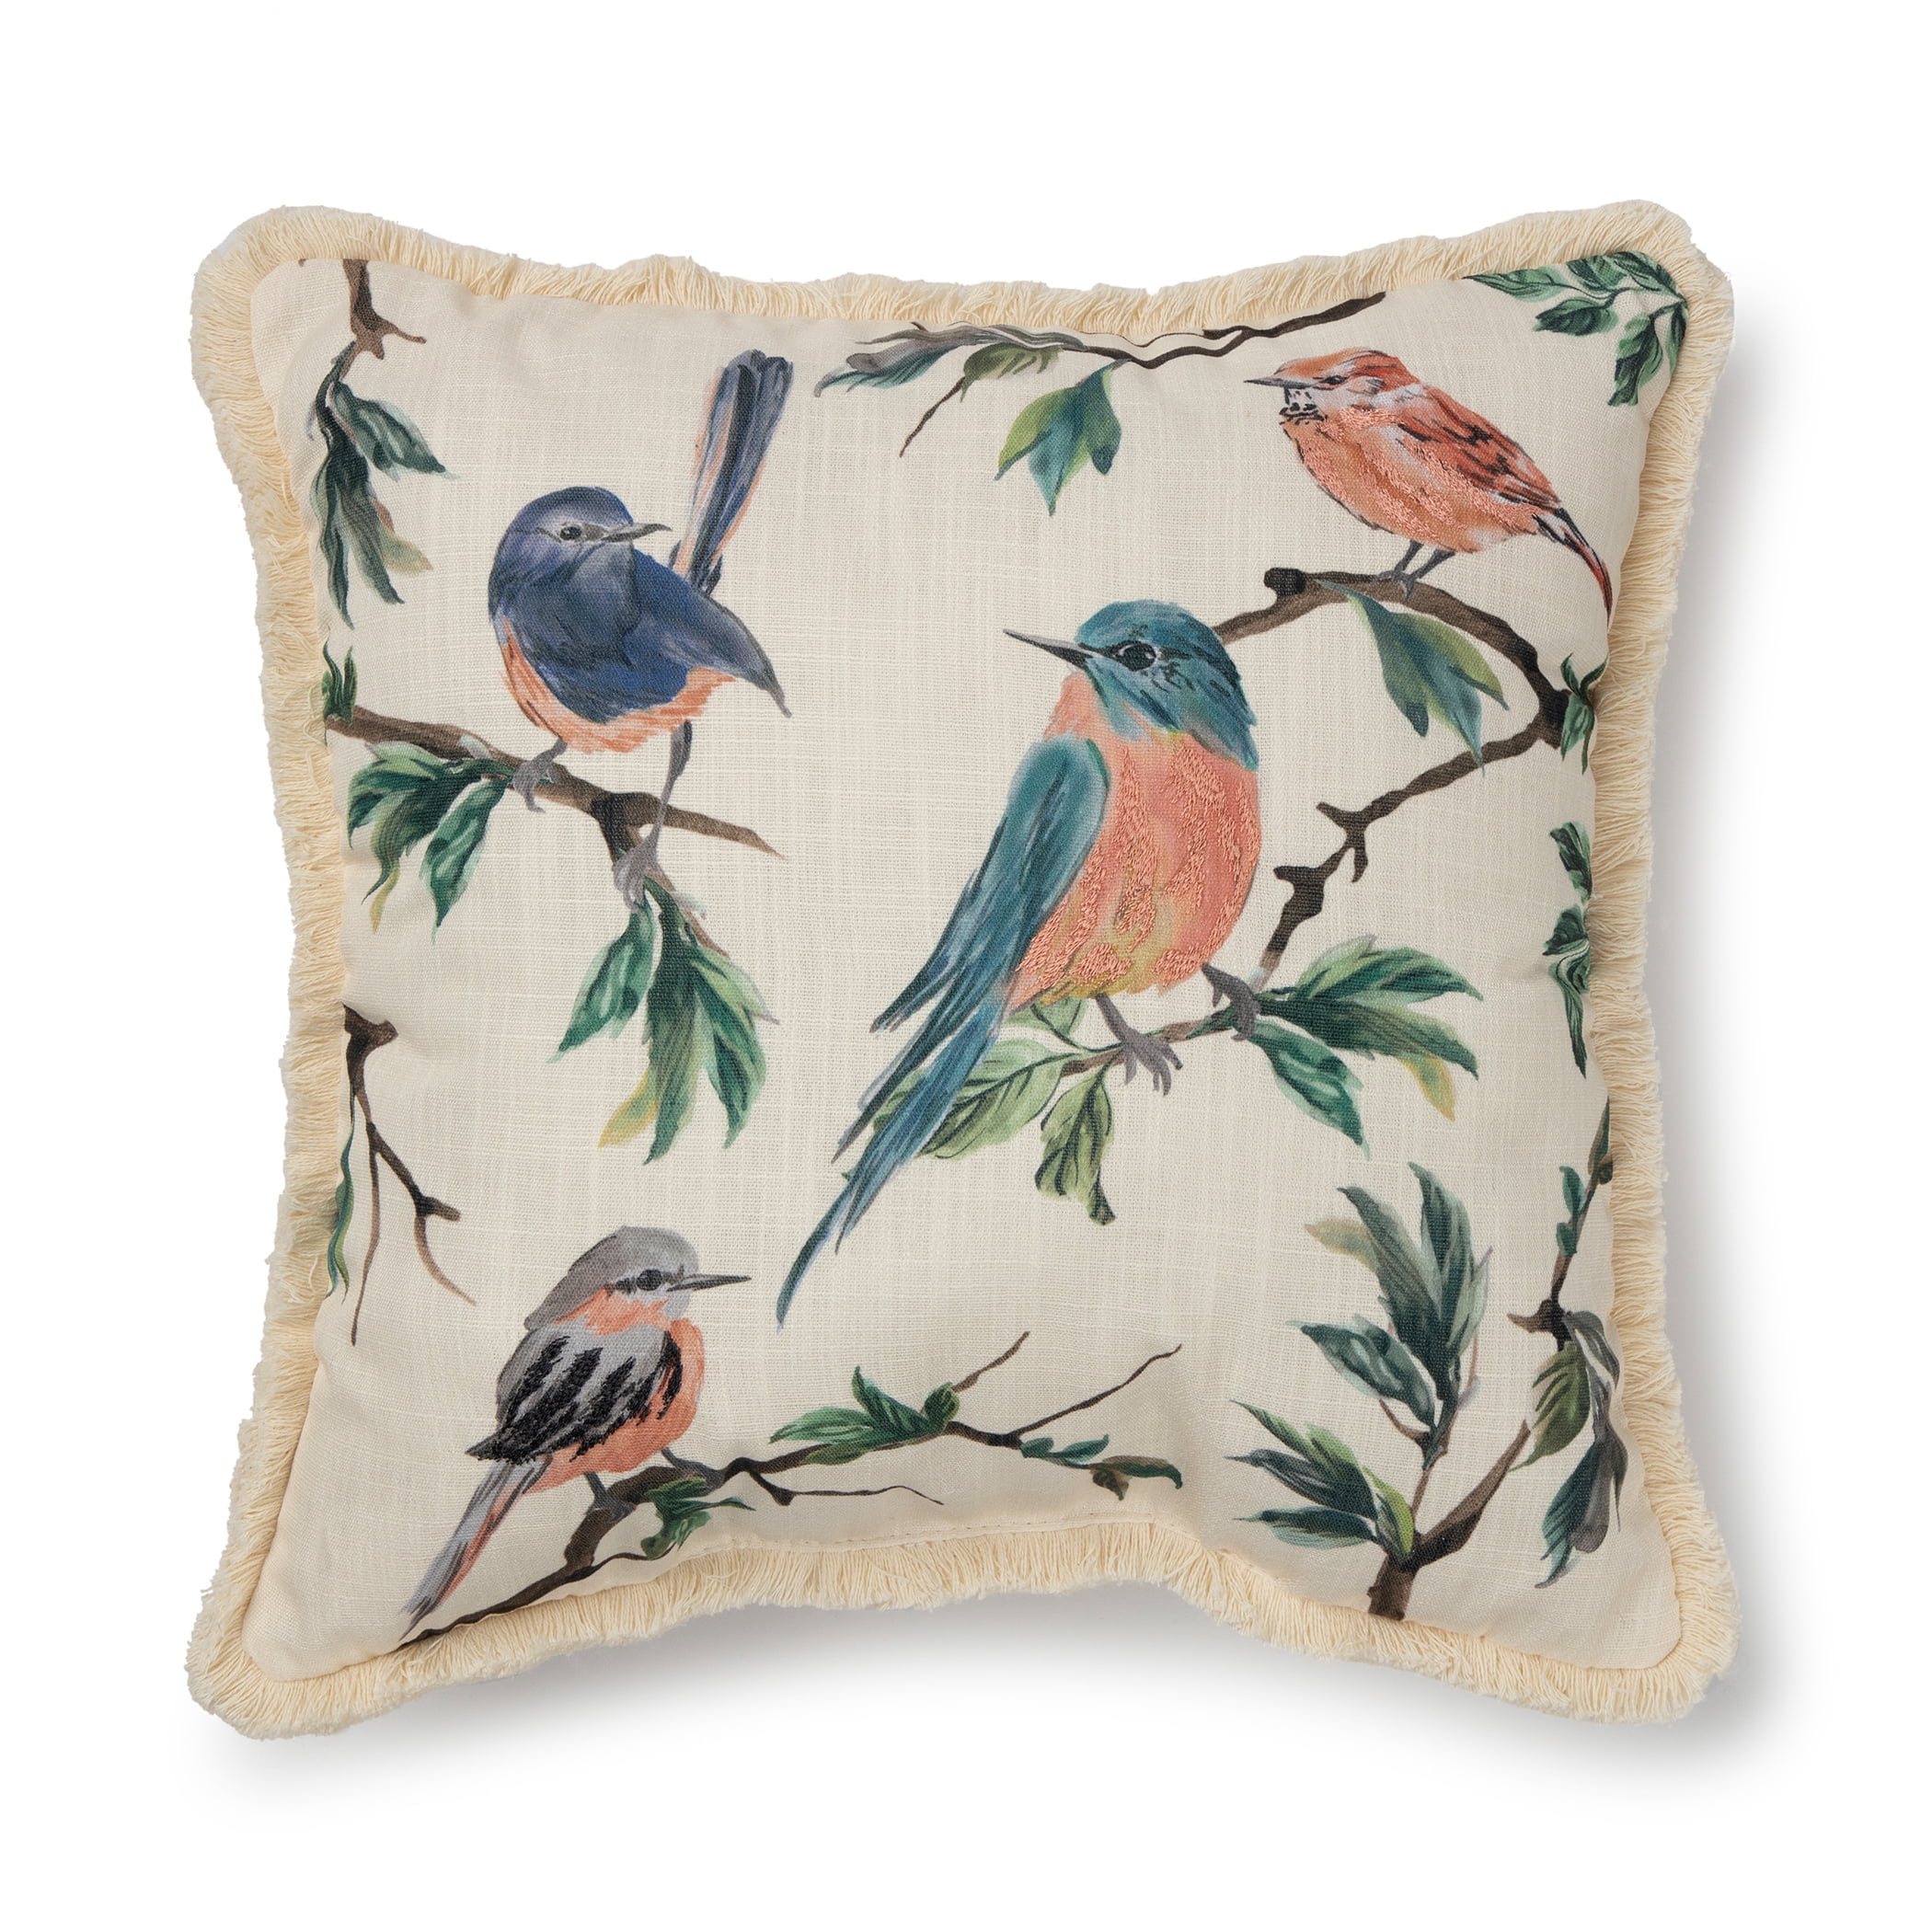 Multicolor The Sleepy Throw Pillow Shop Bird Enthusiast Ornithology Lover Raven Ornithologist Throw Pillow Decorative Pillows 16x16